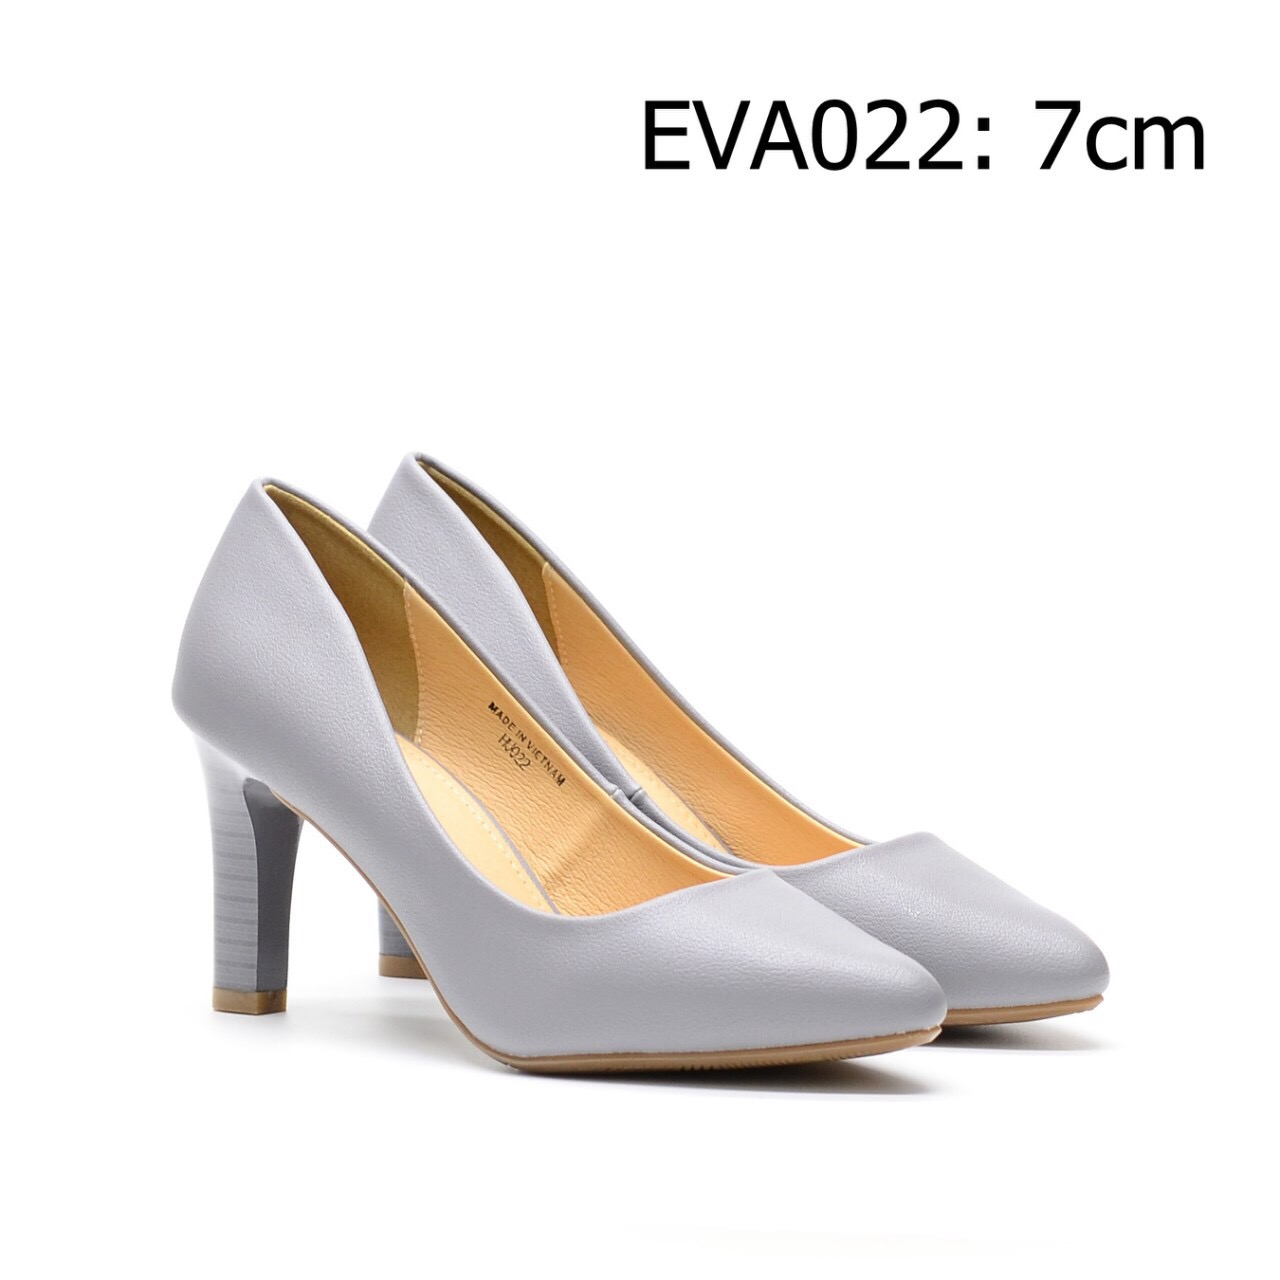 Giày cao gót EVA022 kiểu dáng thanh lịch tạo nét đẹp quyến rũ cho phái đẹp